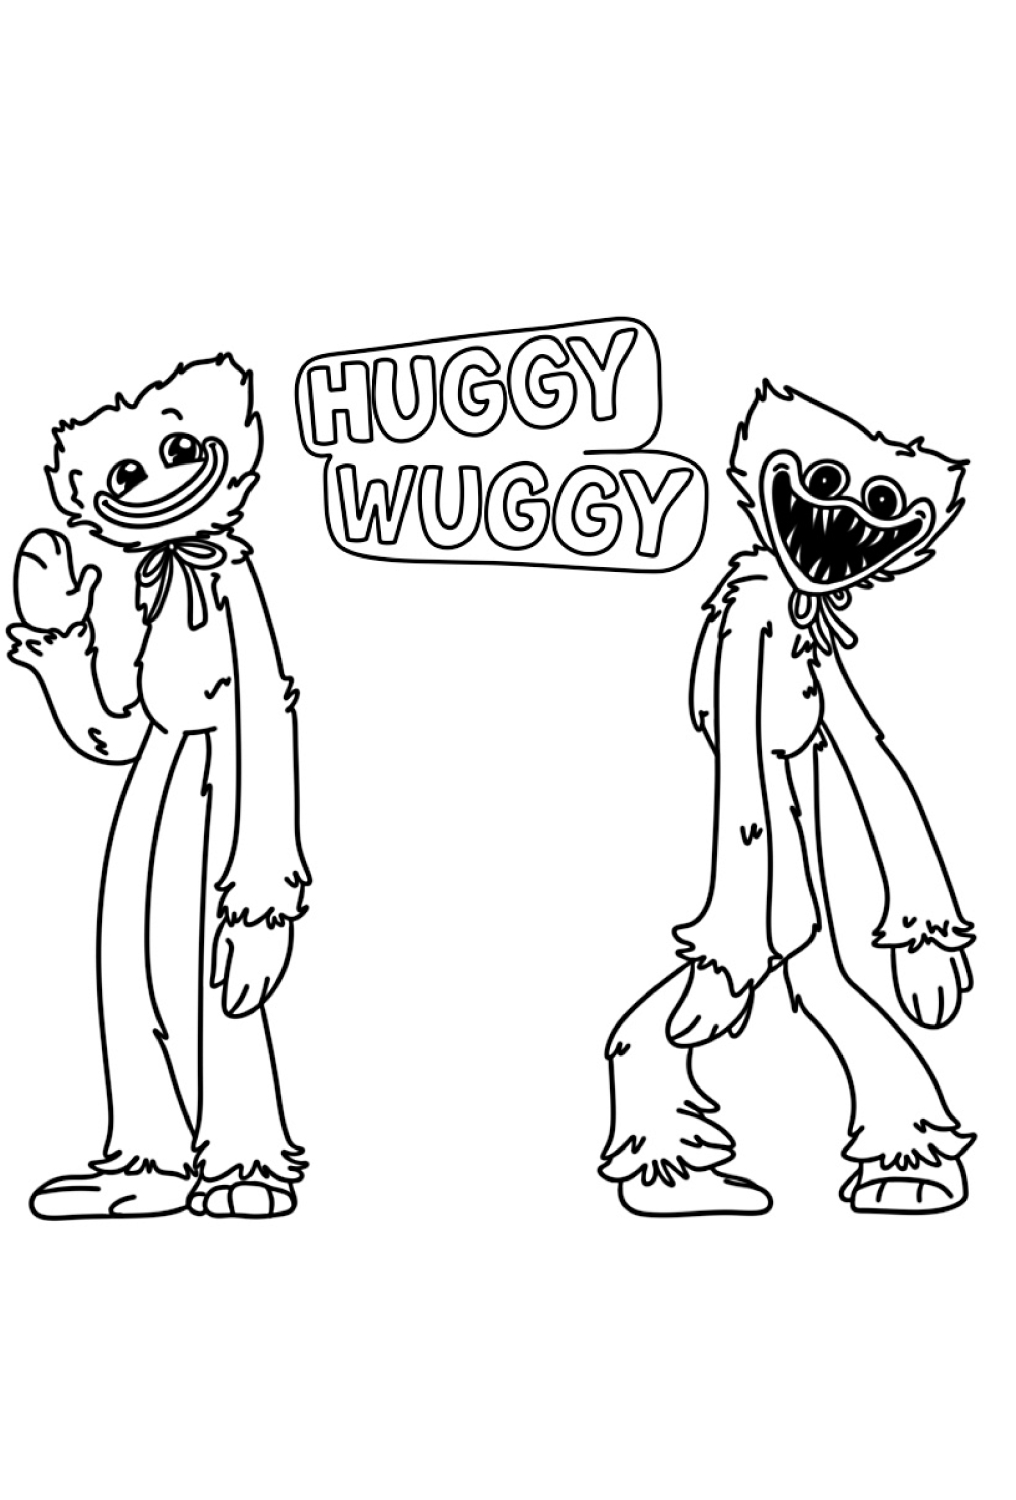 Disegno 30 di Huggy Wuggy da stampare e colorare